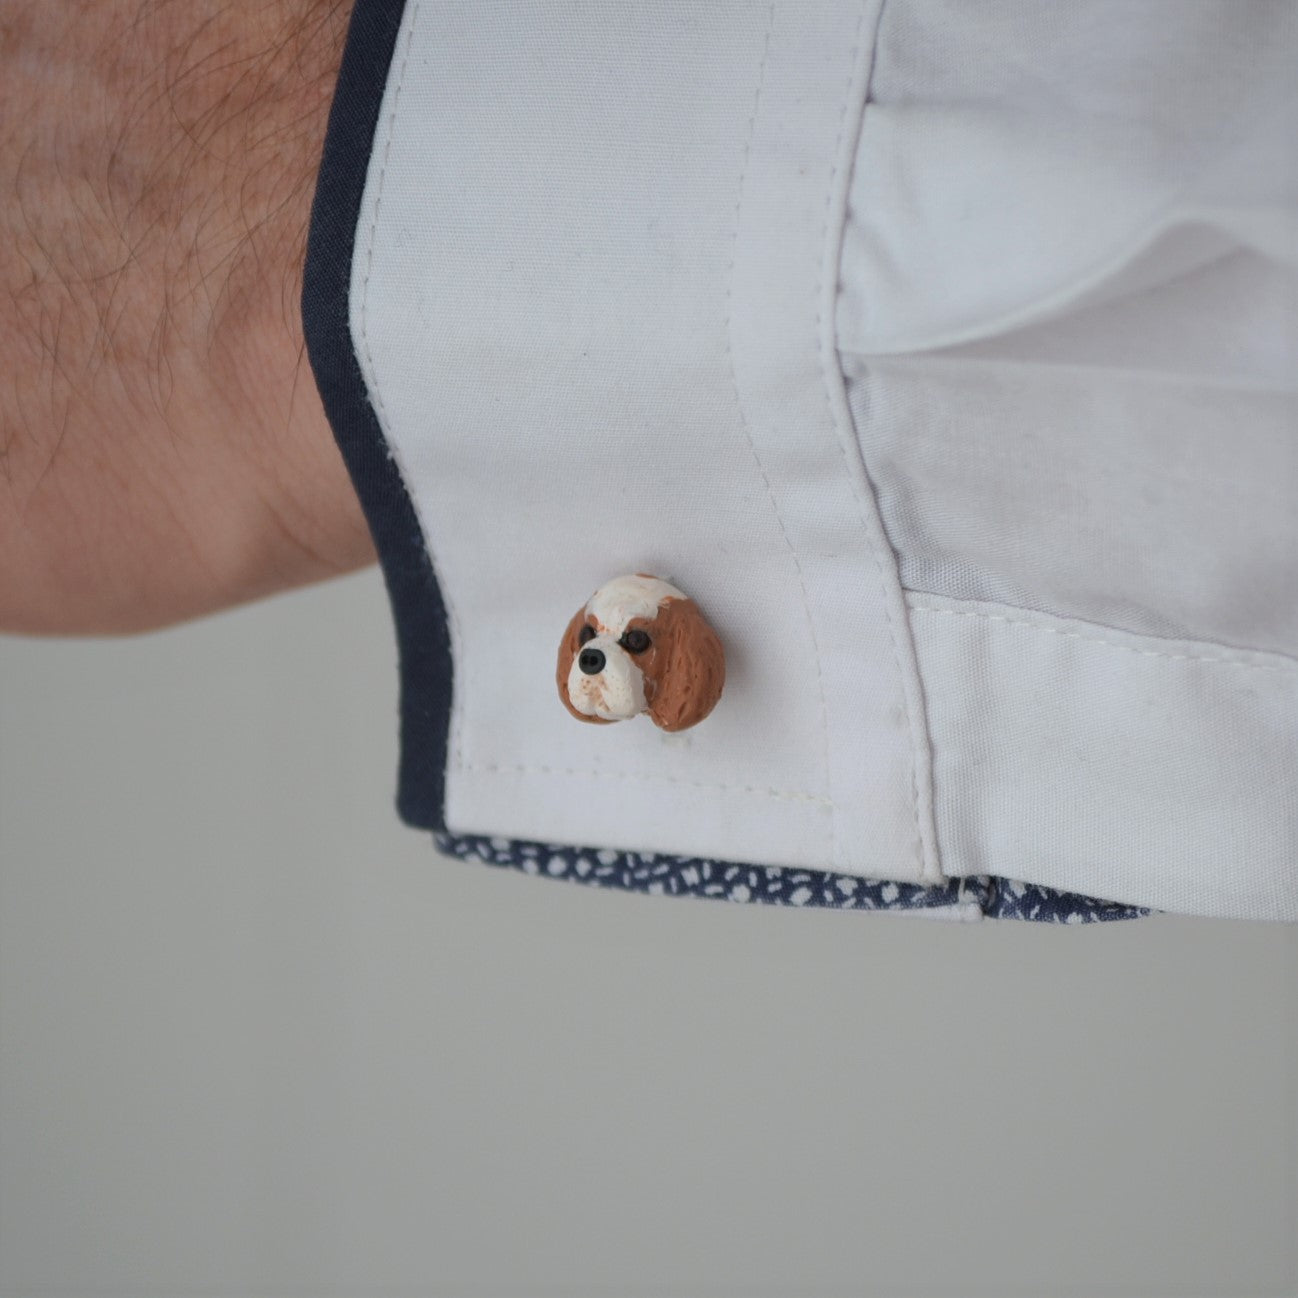 custom dog cufflink shown on sleeve